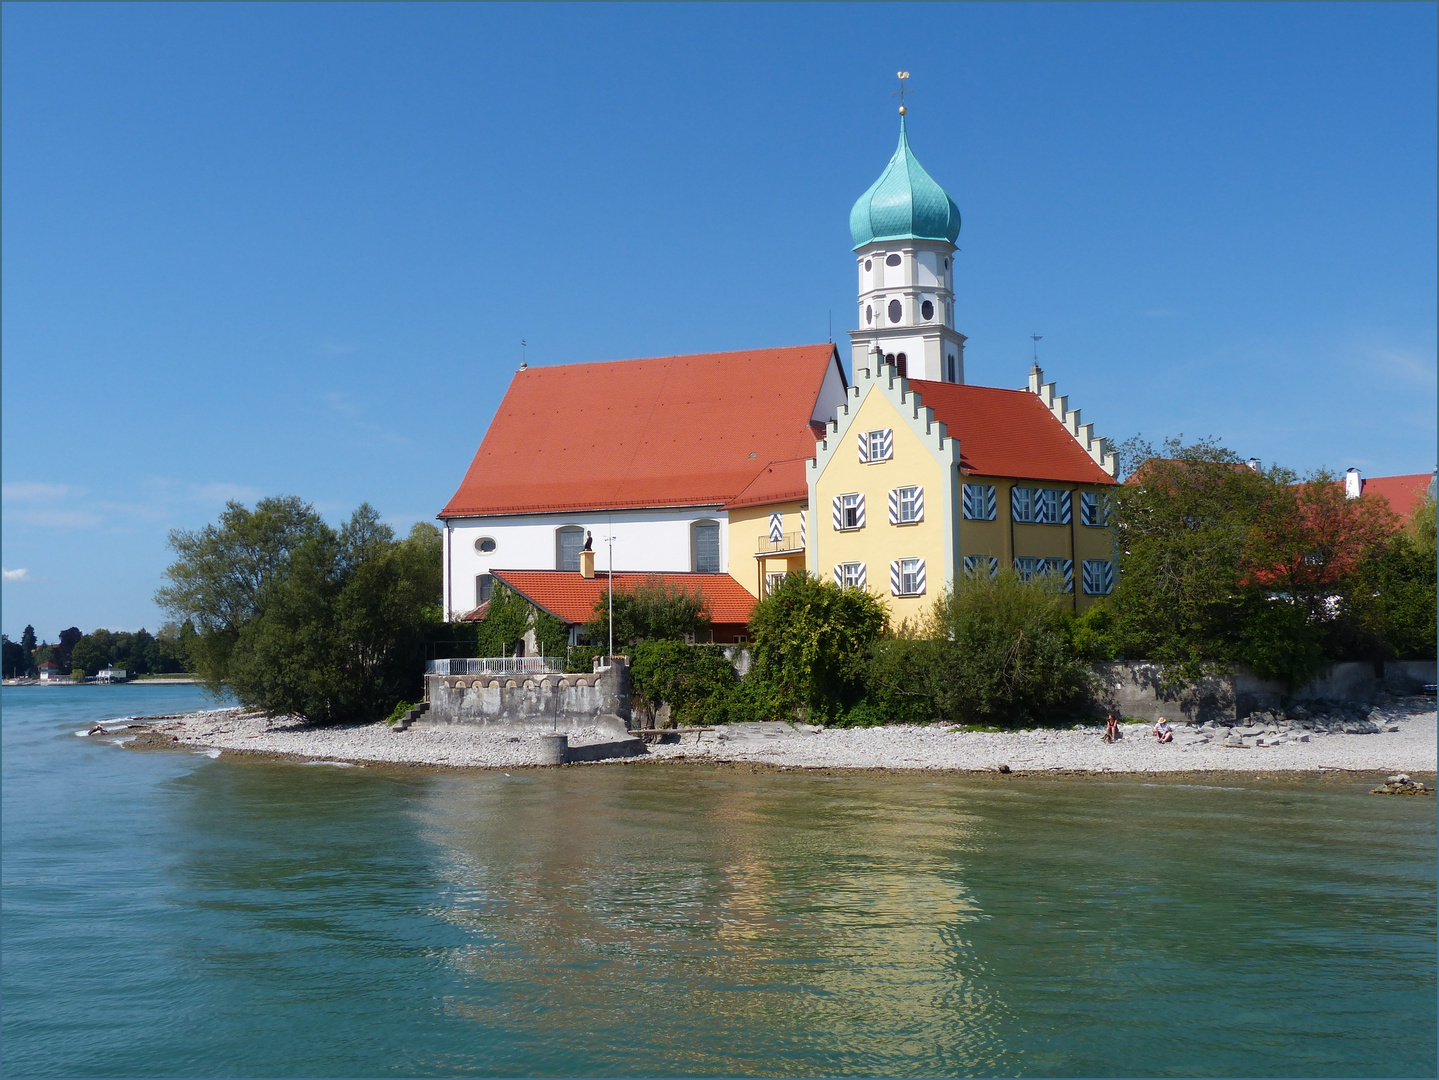 St. Georg-Kirche in Wasserburg am Bodensee